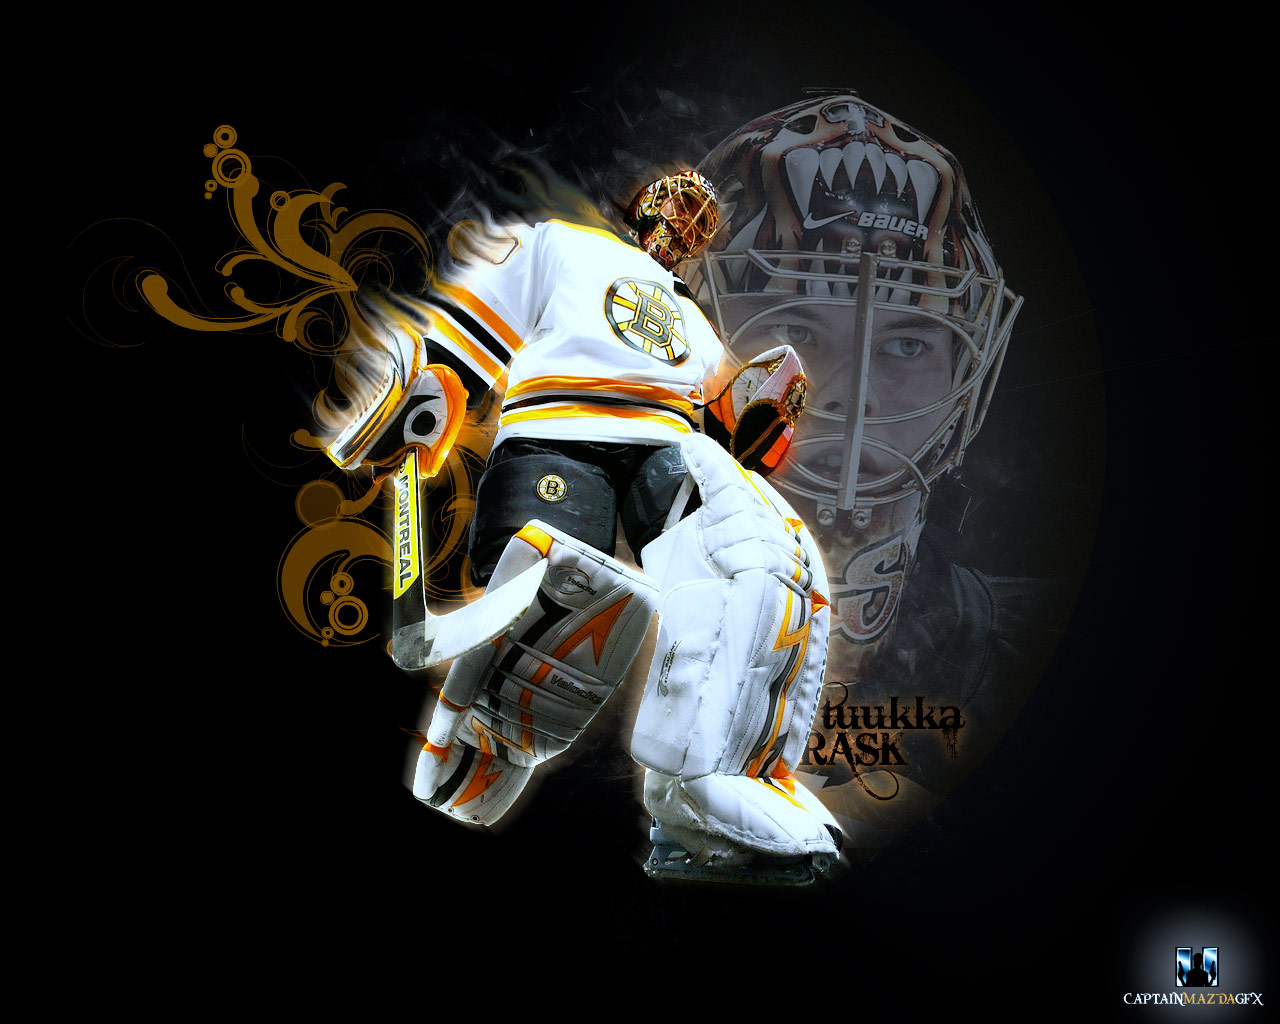 Sportwallpaper Tuukka Rask Boston Bruins Wallpaper